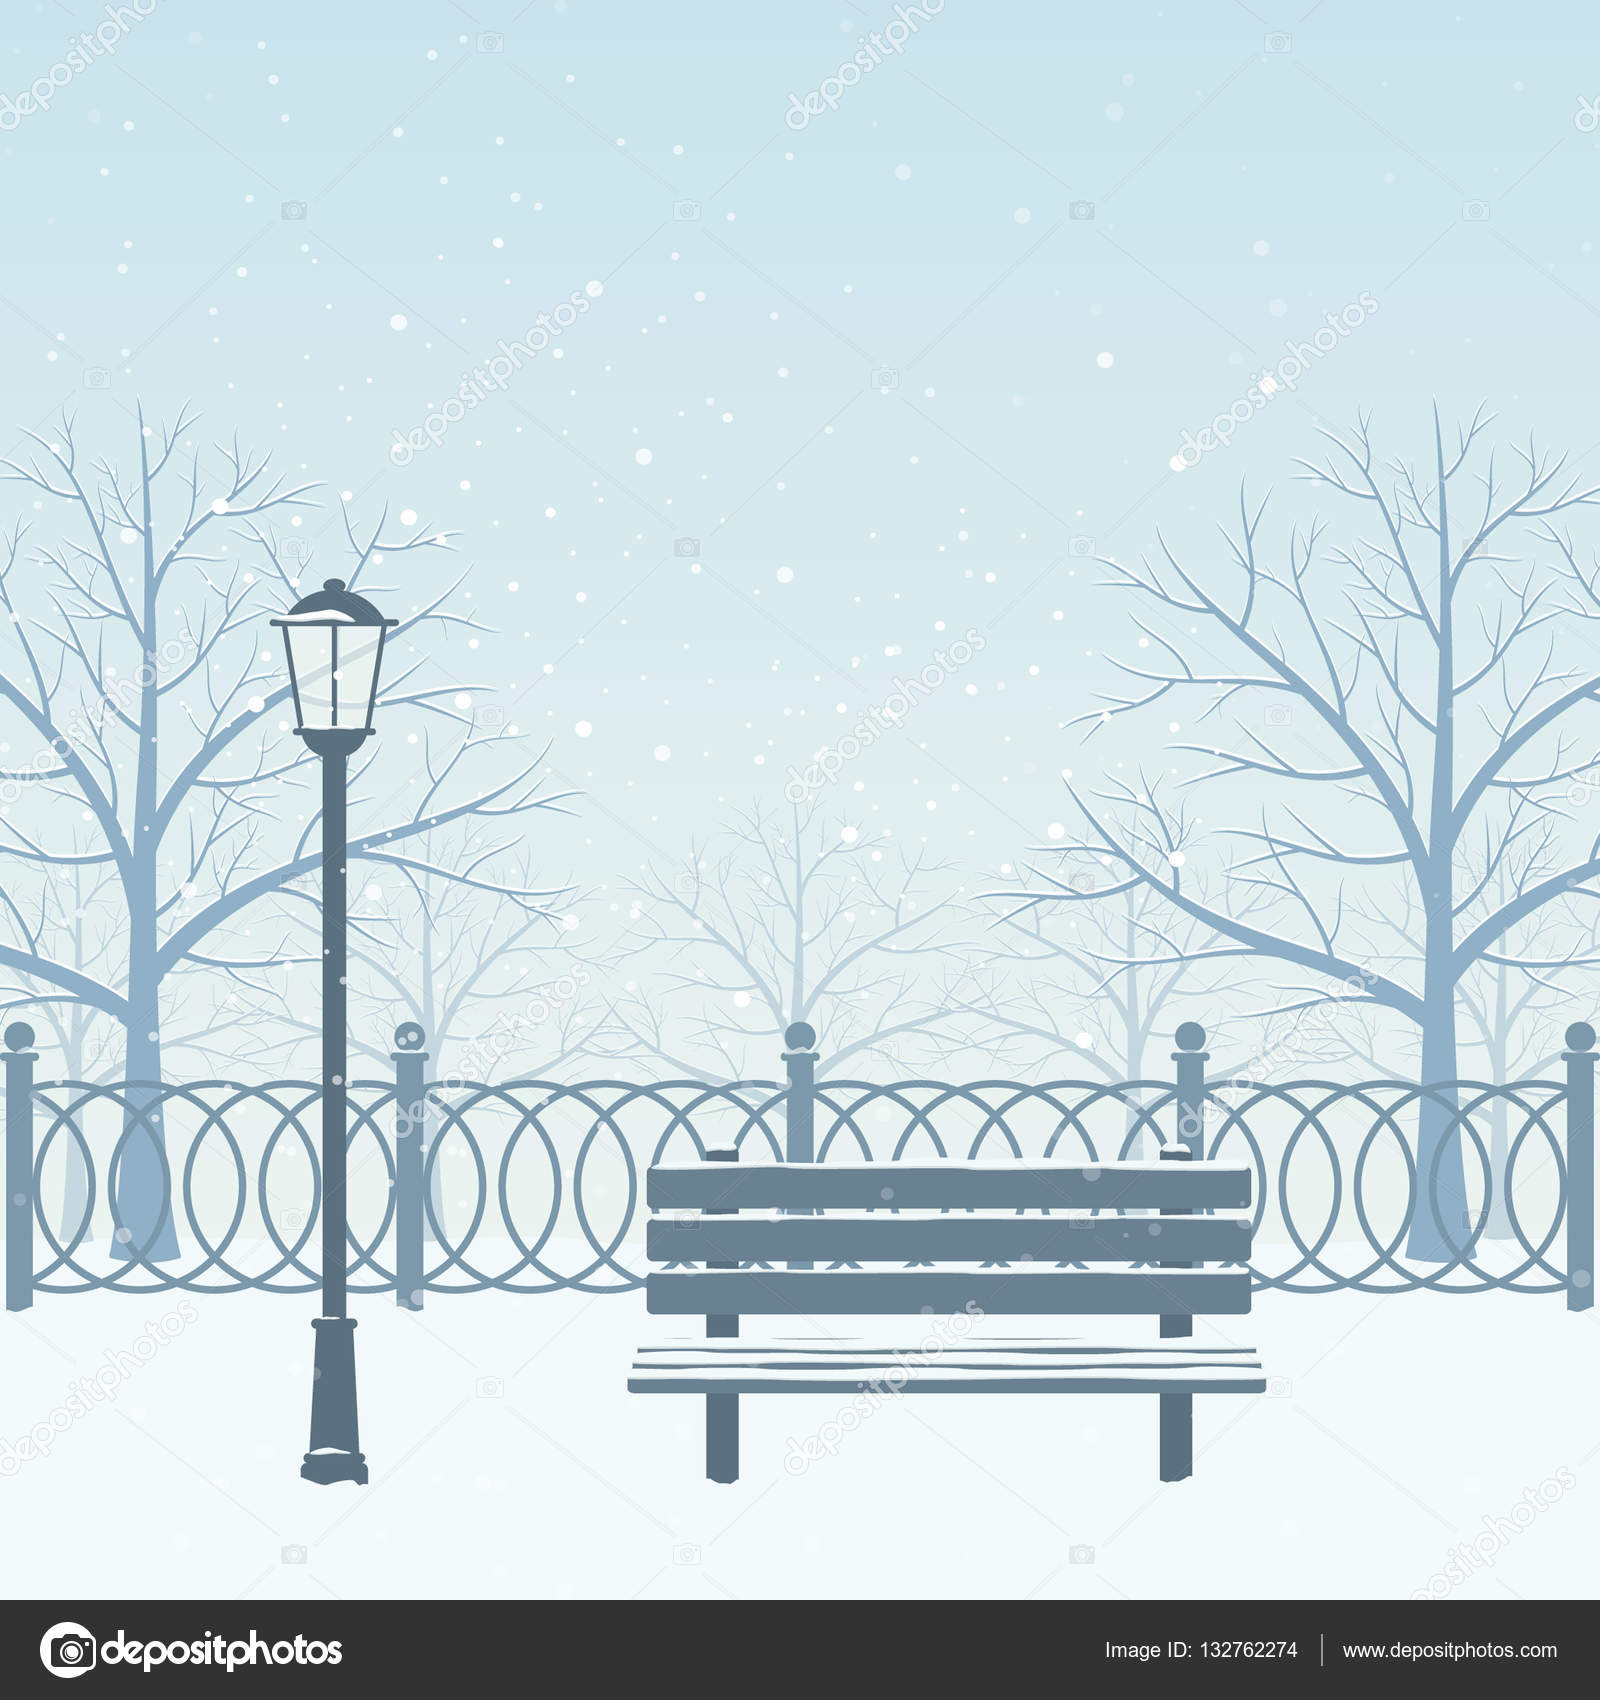 Winter park, bench, street light, snow. Vector illustration. Stock Vector  by ©sanchesnet1@gmail.com 132762274